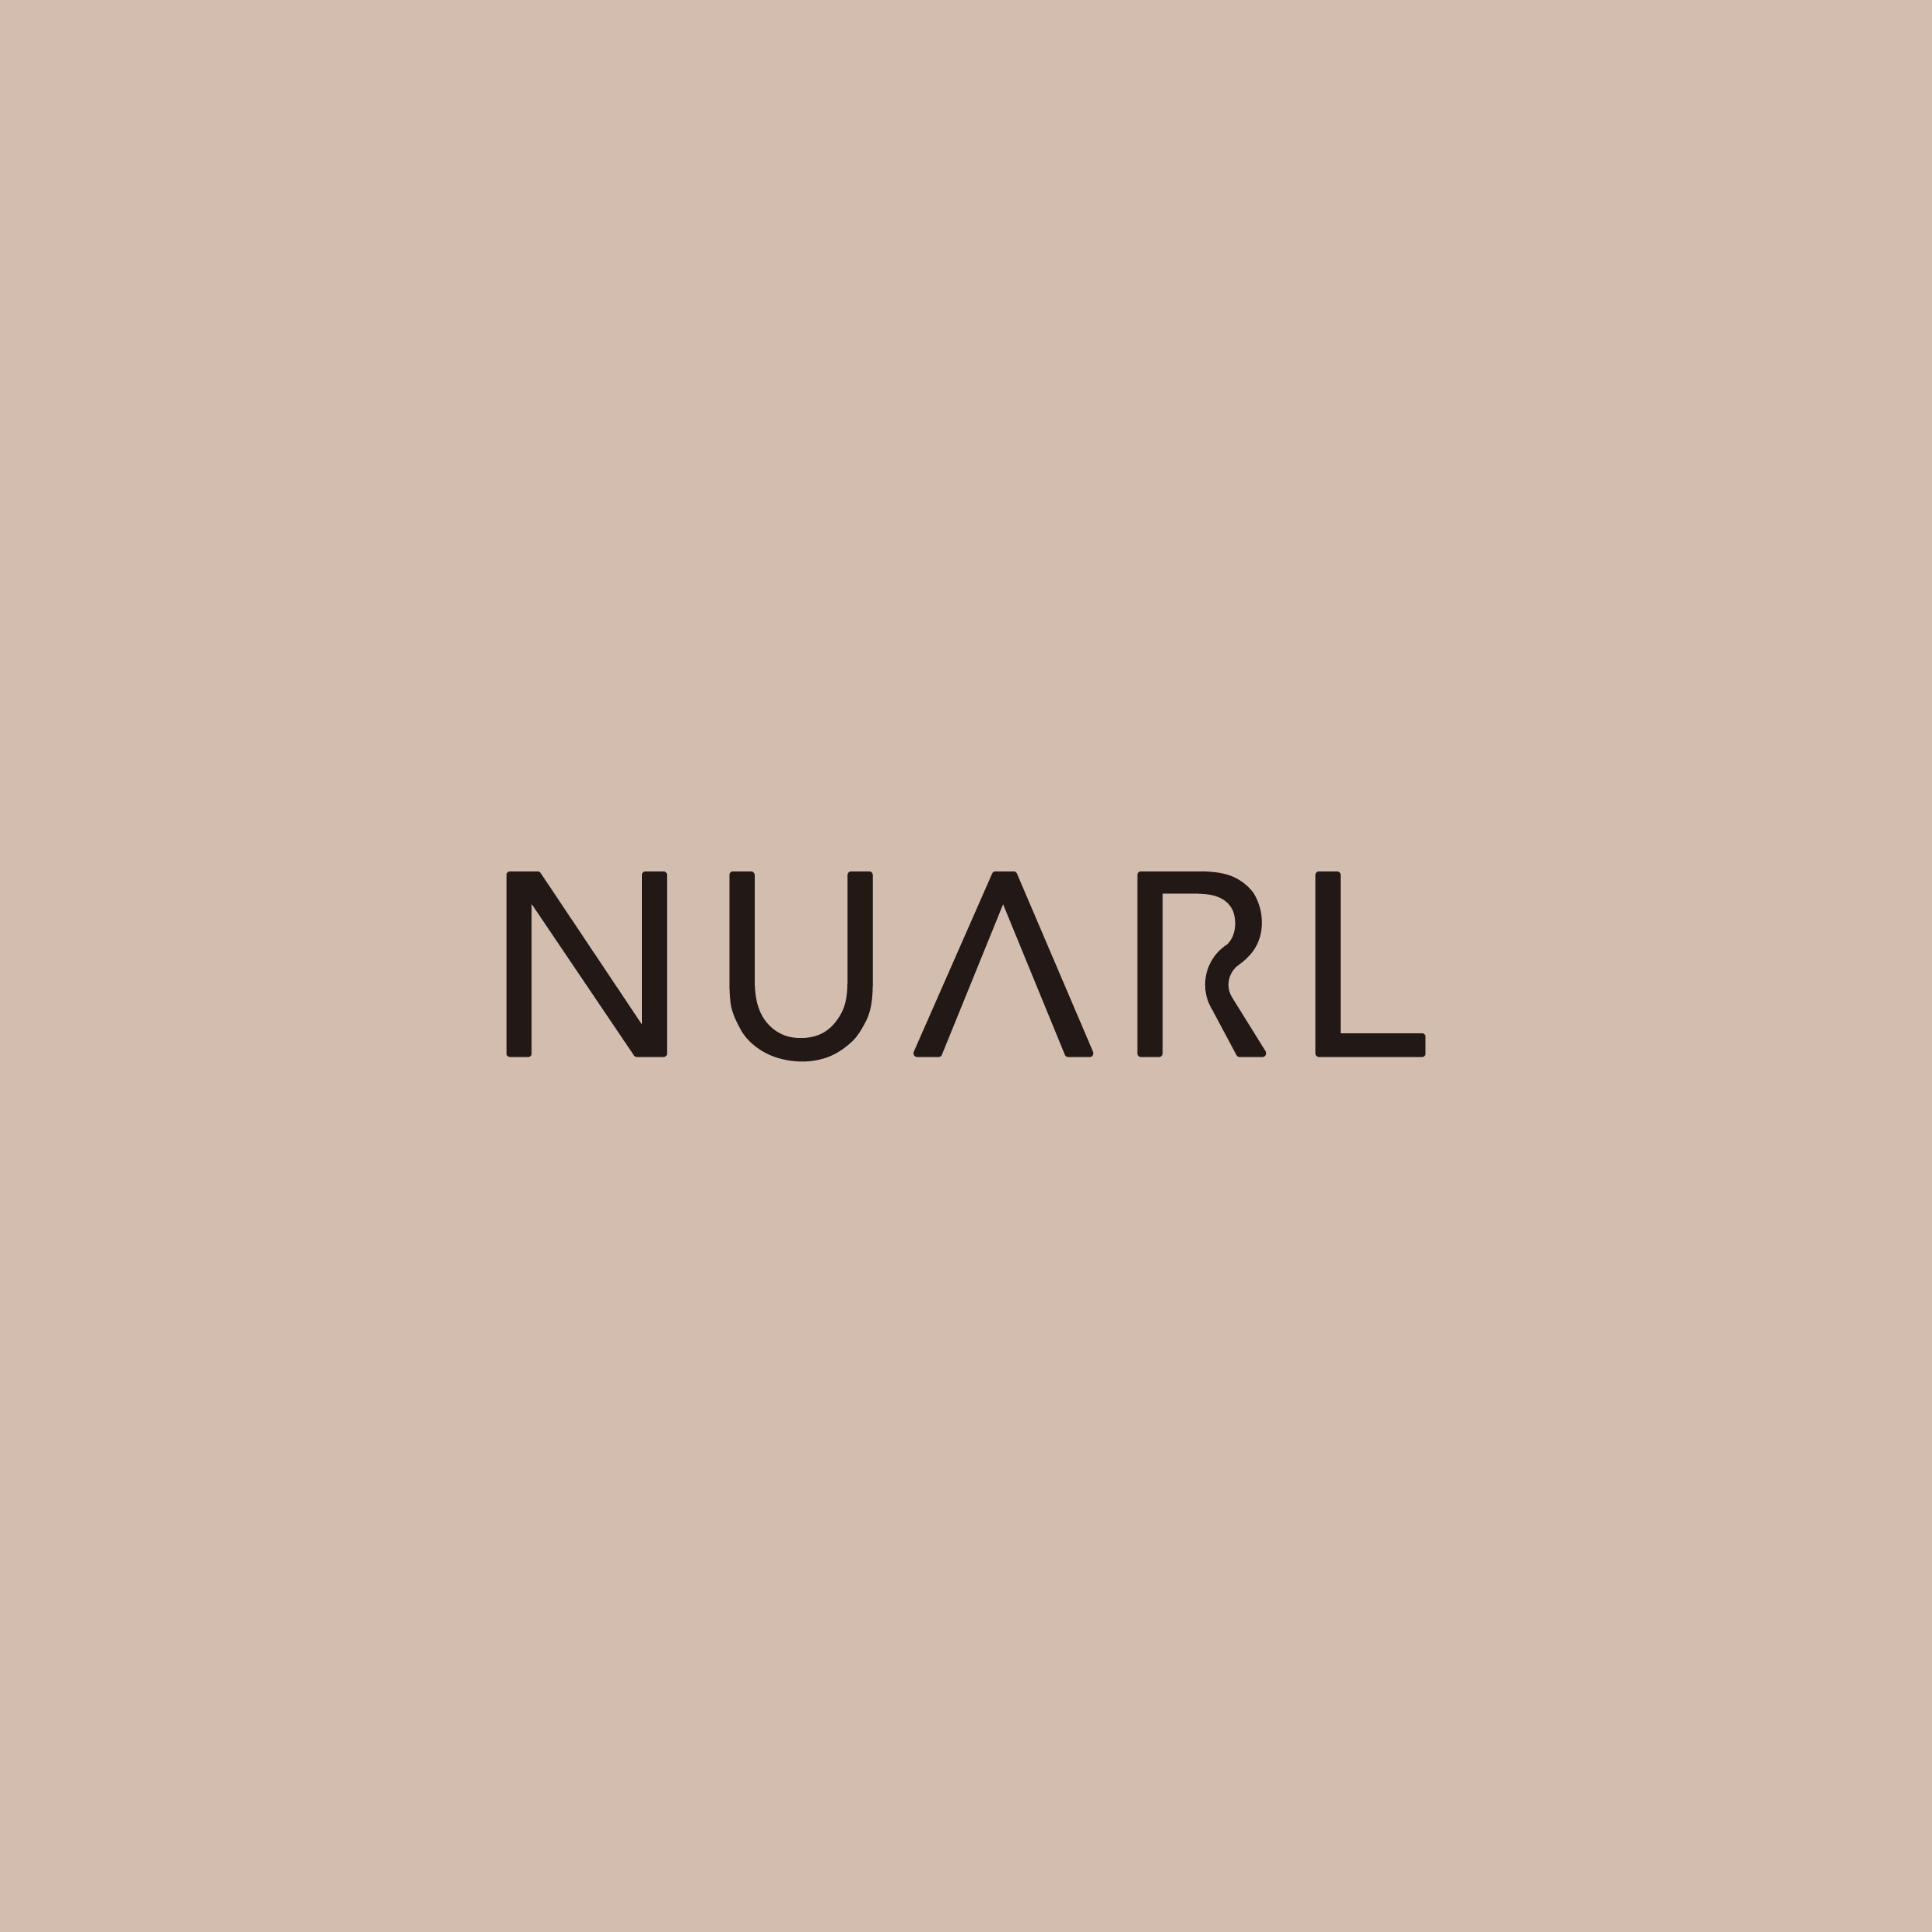 ミニマルなデザイン×低価格のモバイル製品ブランド「NUARL」誕生 